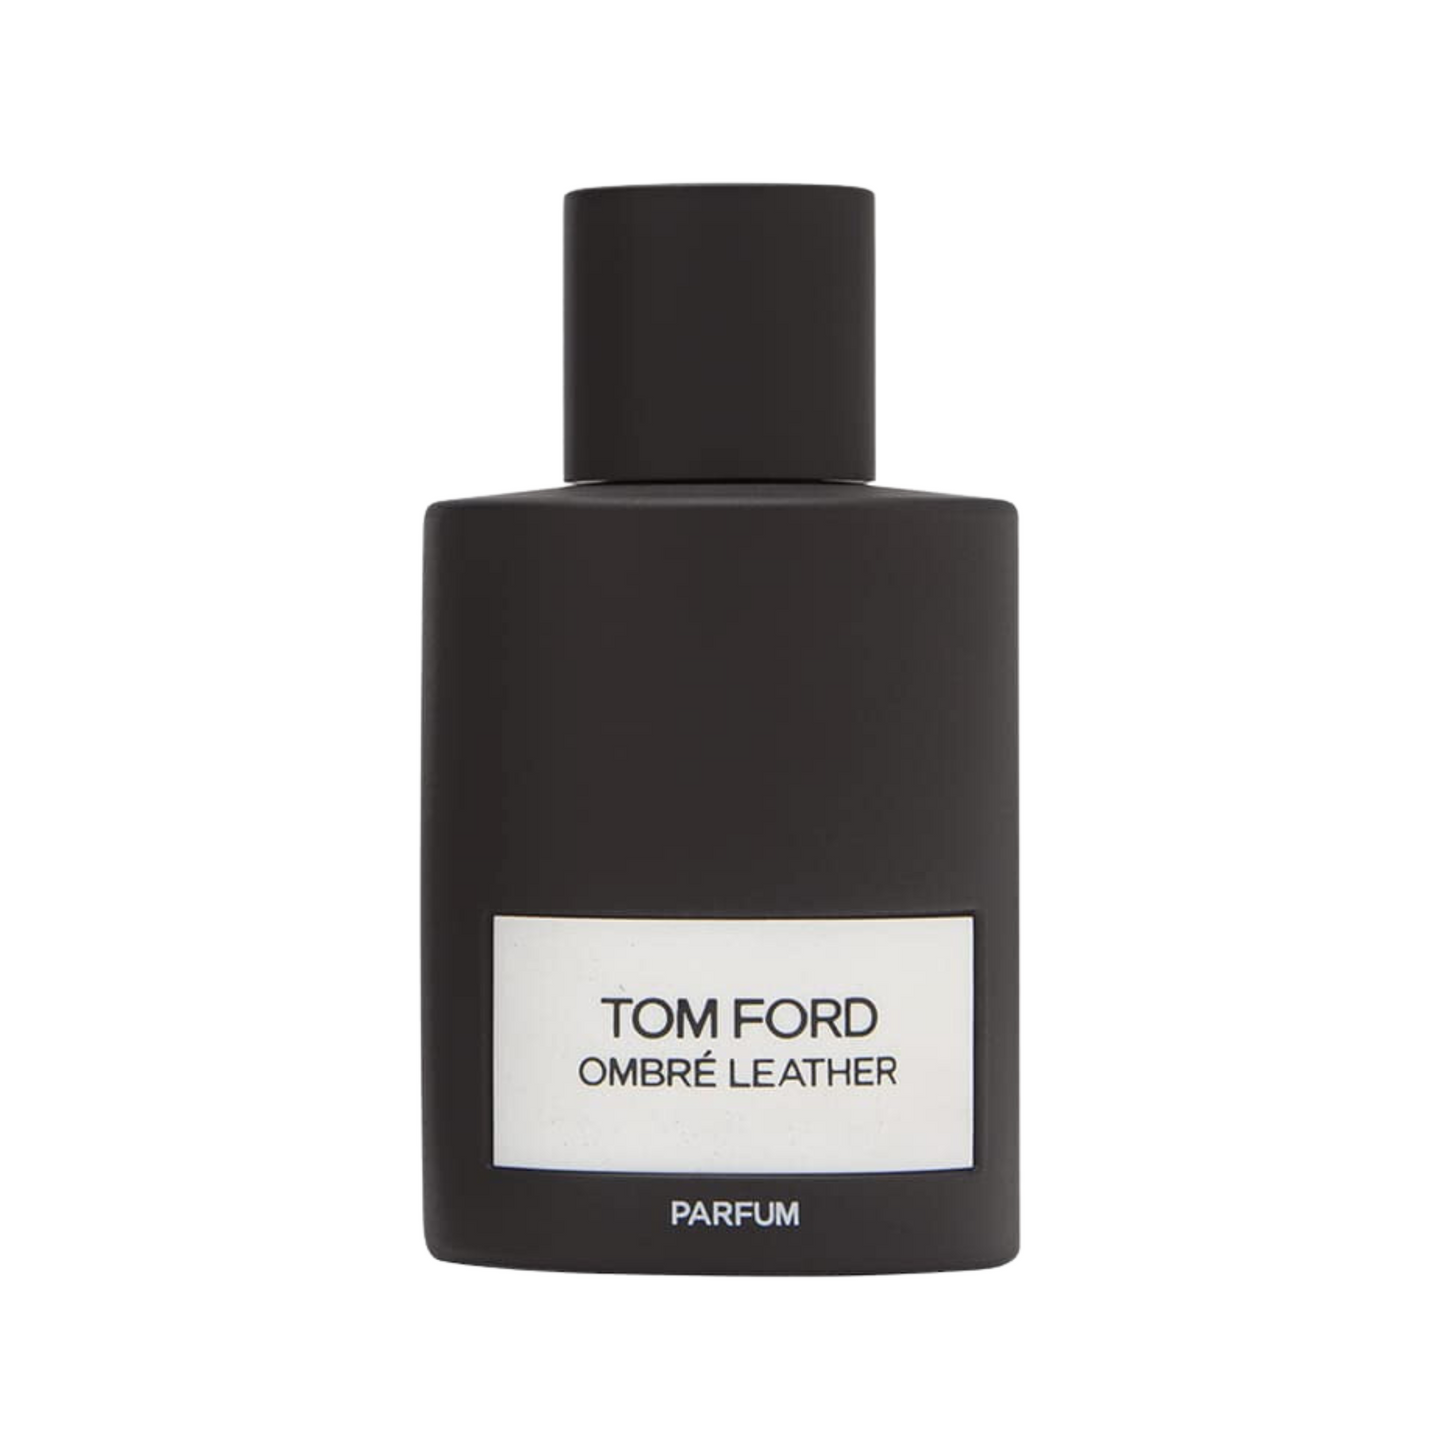 Perfume TOM FORD OMBRÉ LEATHER PARFUM 100ml